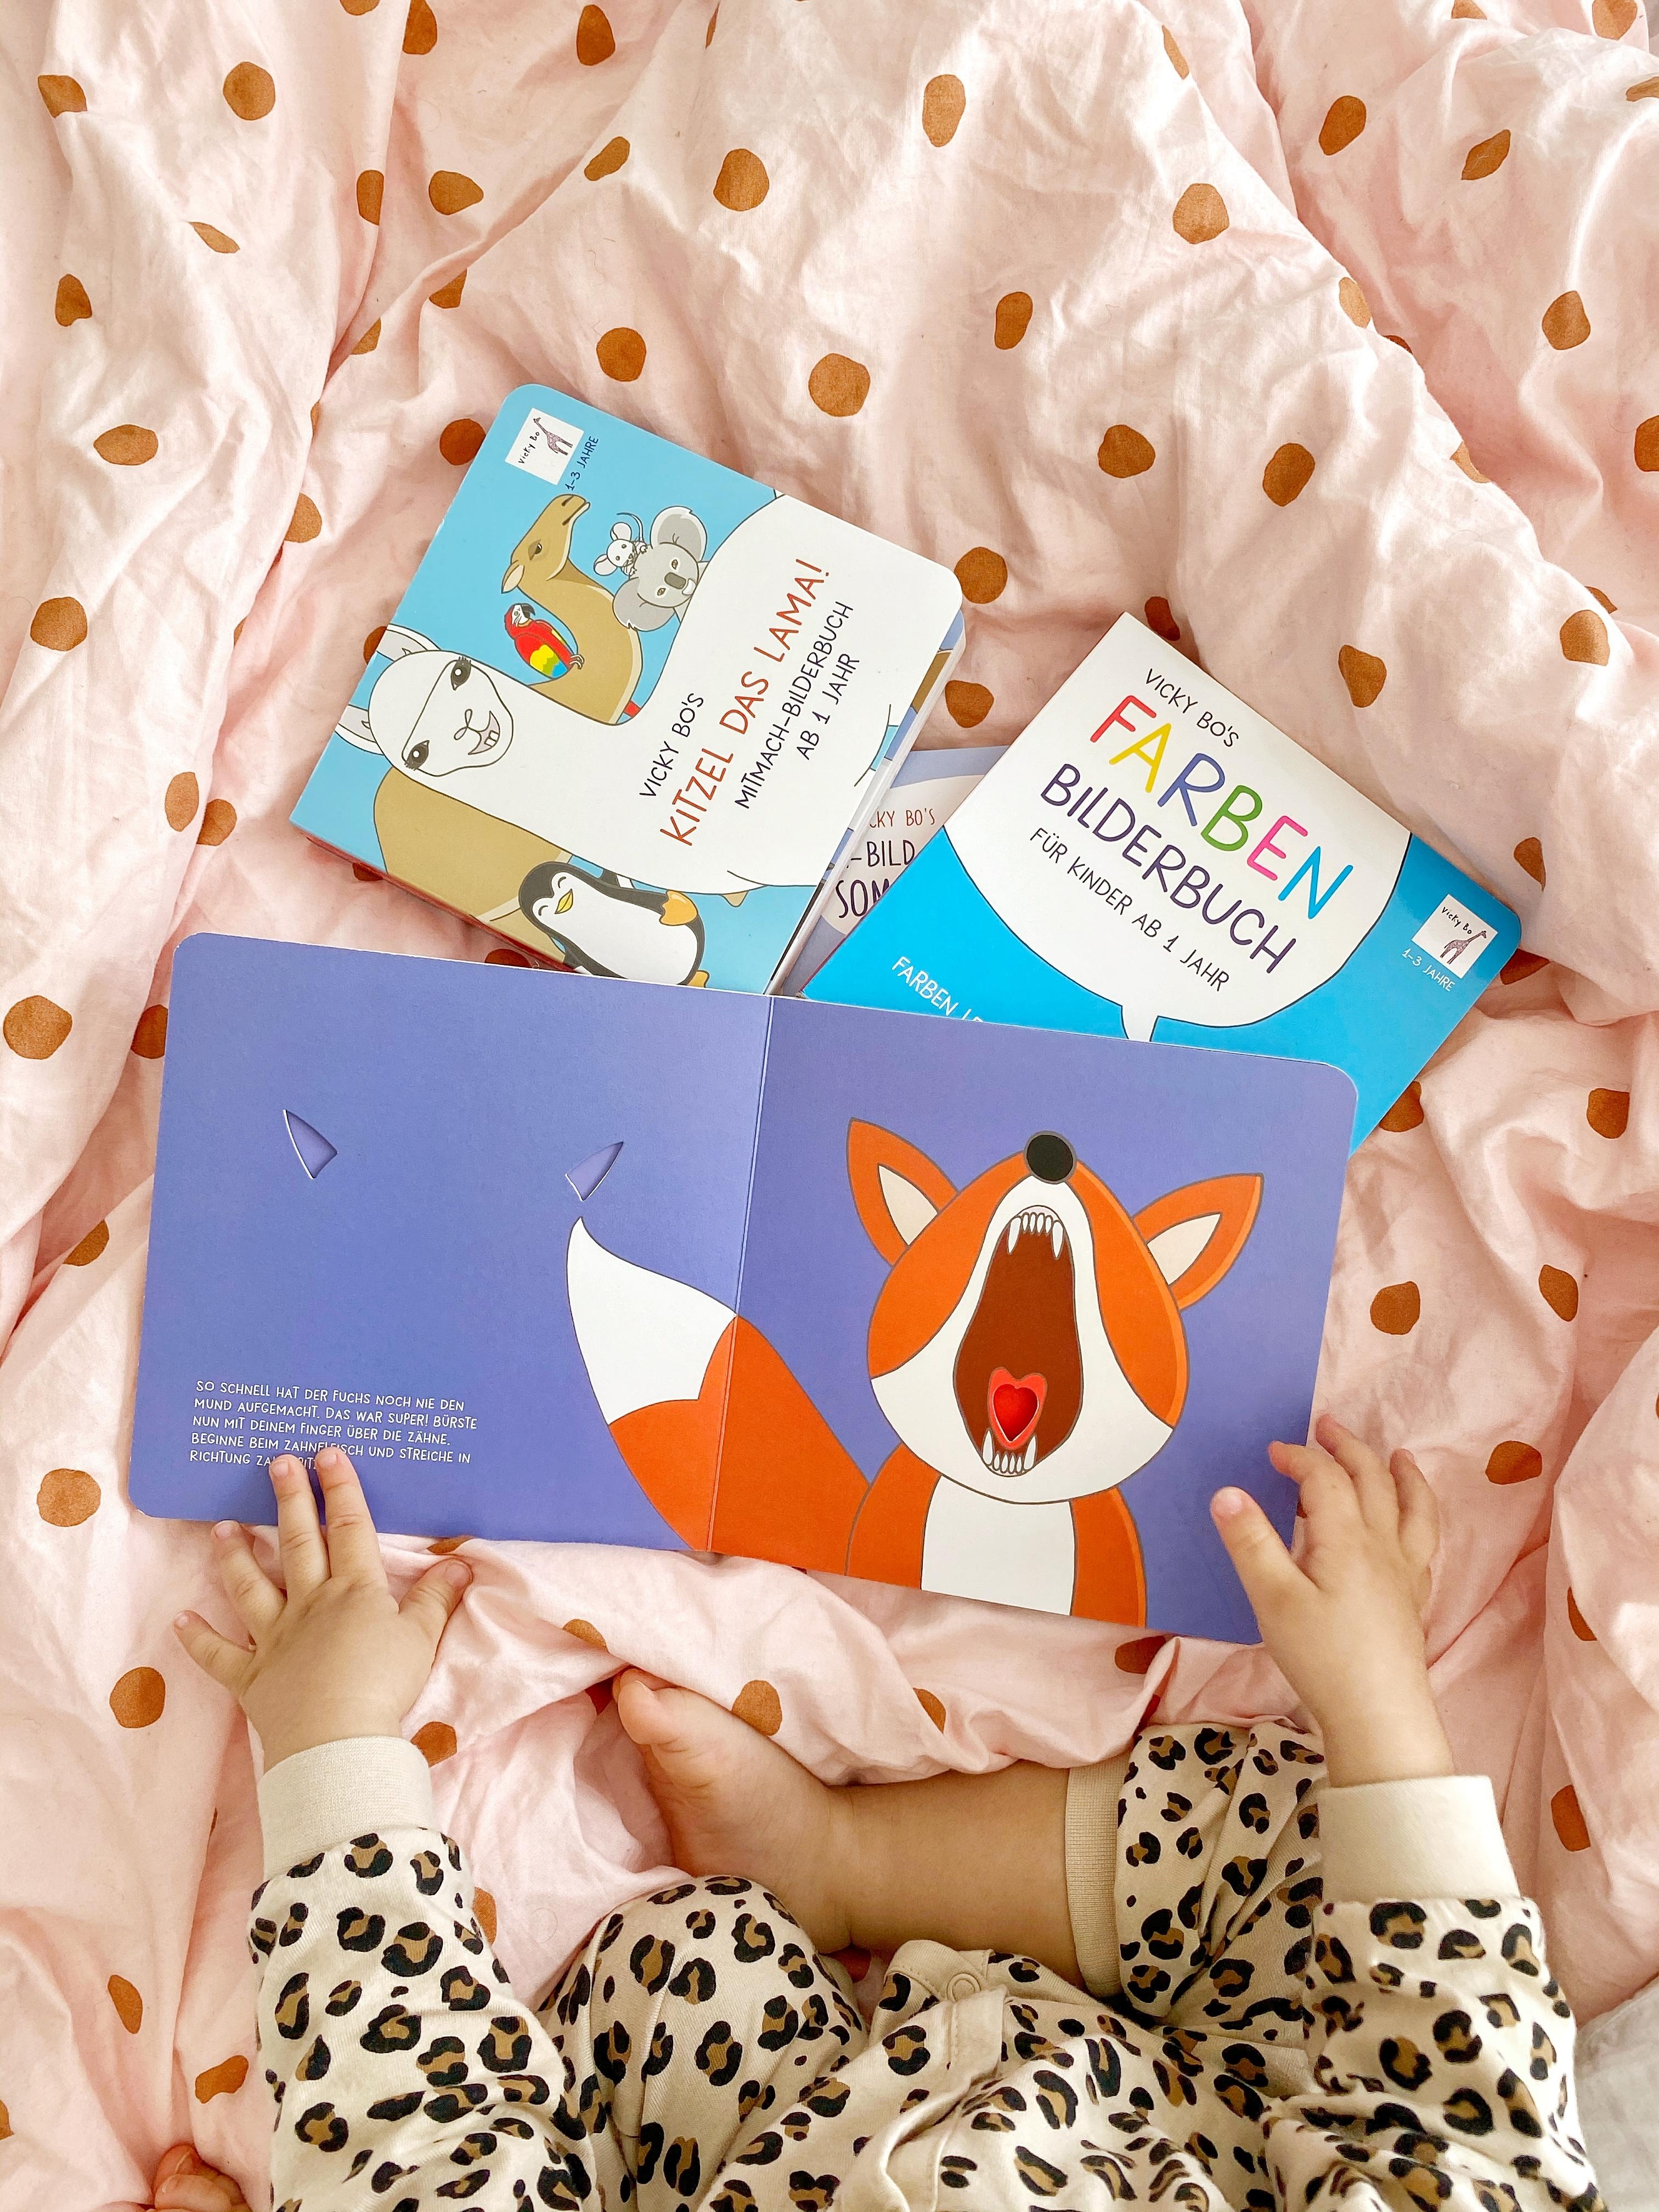 Lieblingsbücher auf der Lieblingsbettwäsche
#schlafzimmer #lebenmitkindern